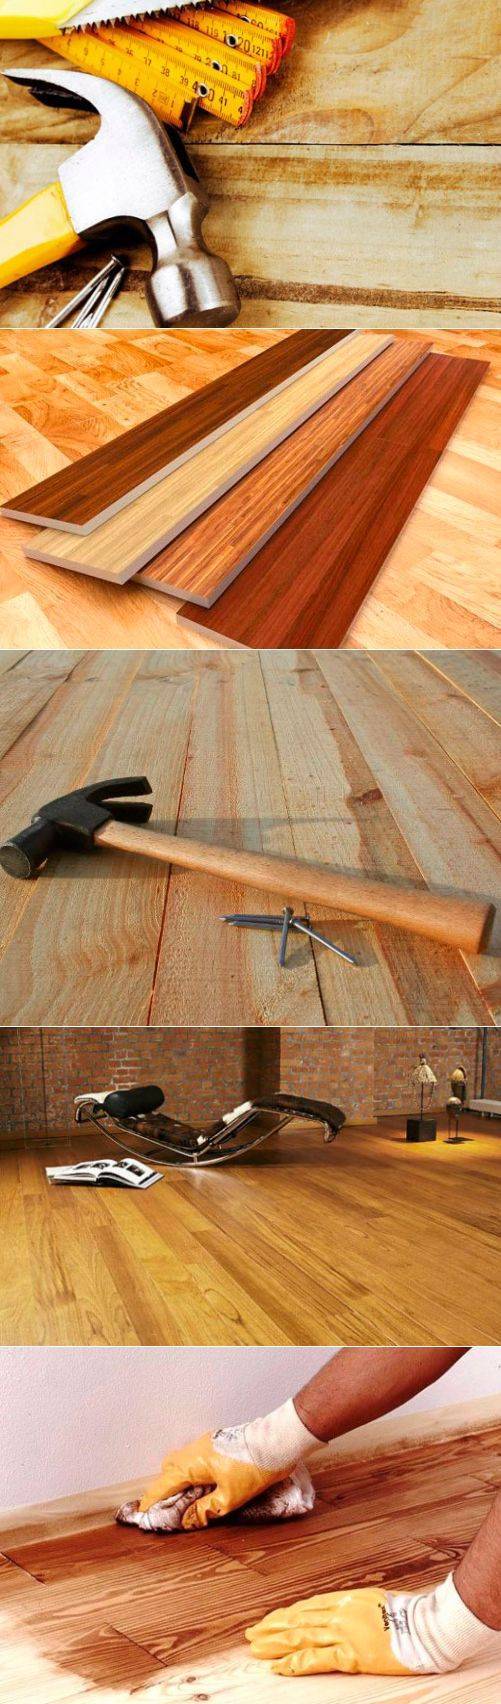 Как избавиться от скрипа деревянного пола без перестилания досок и с его проведением